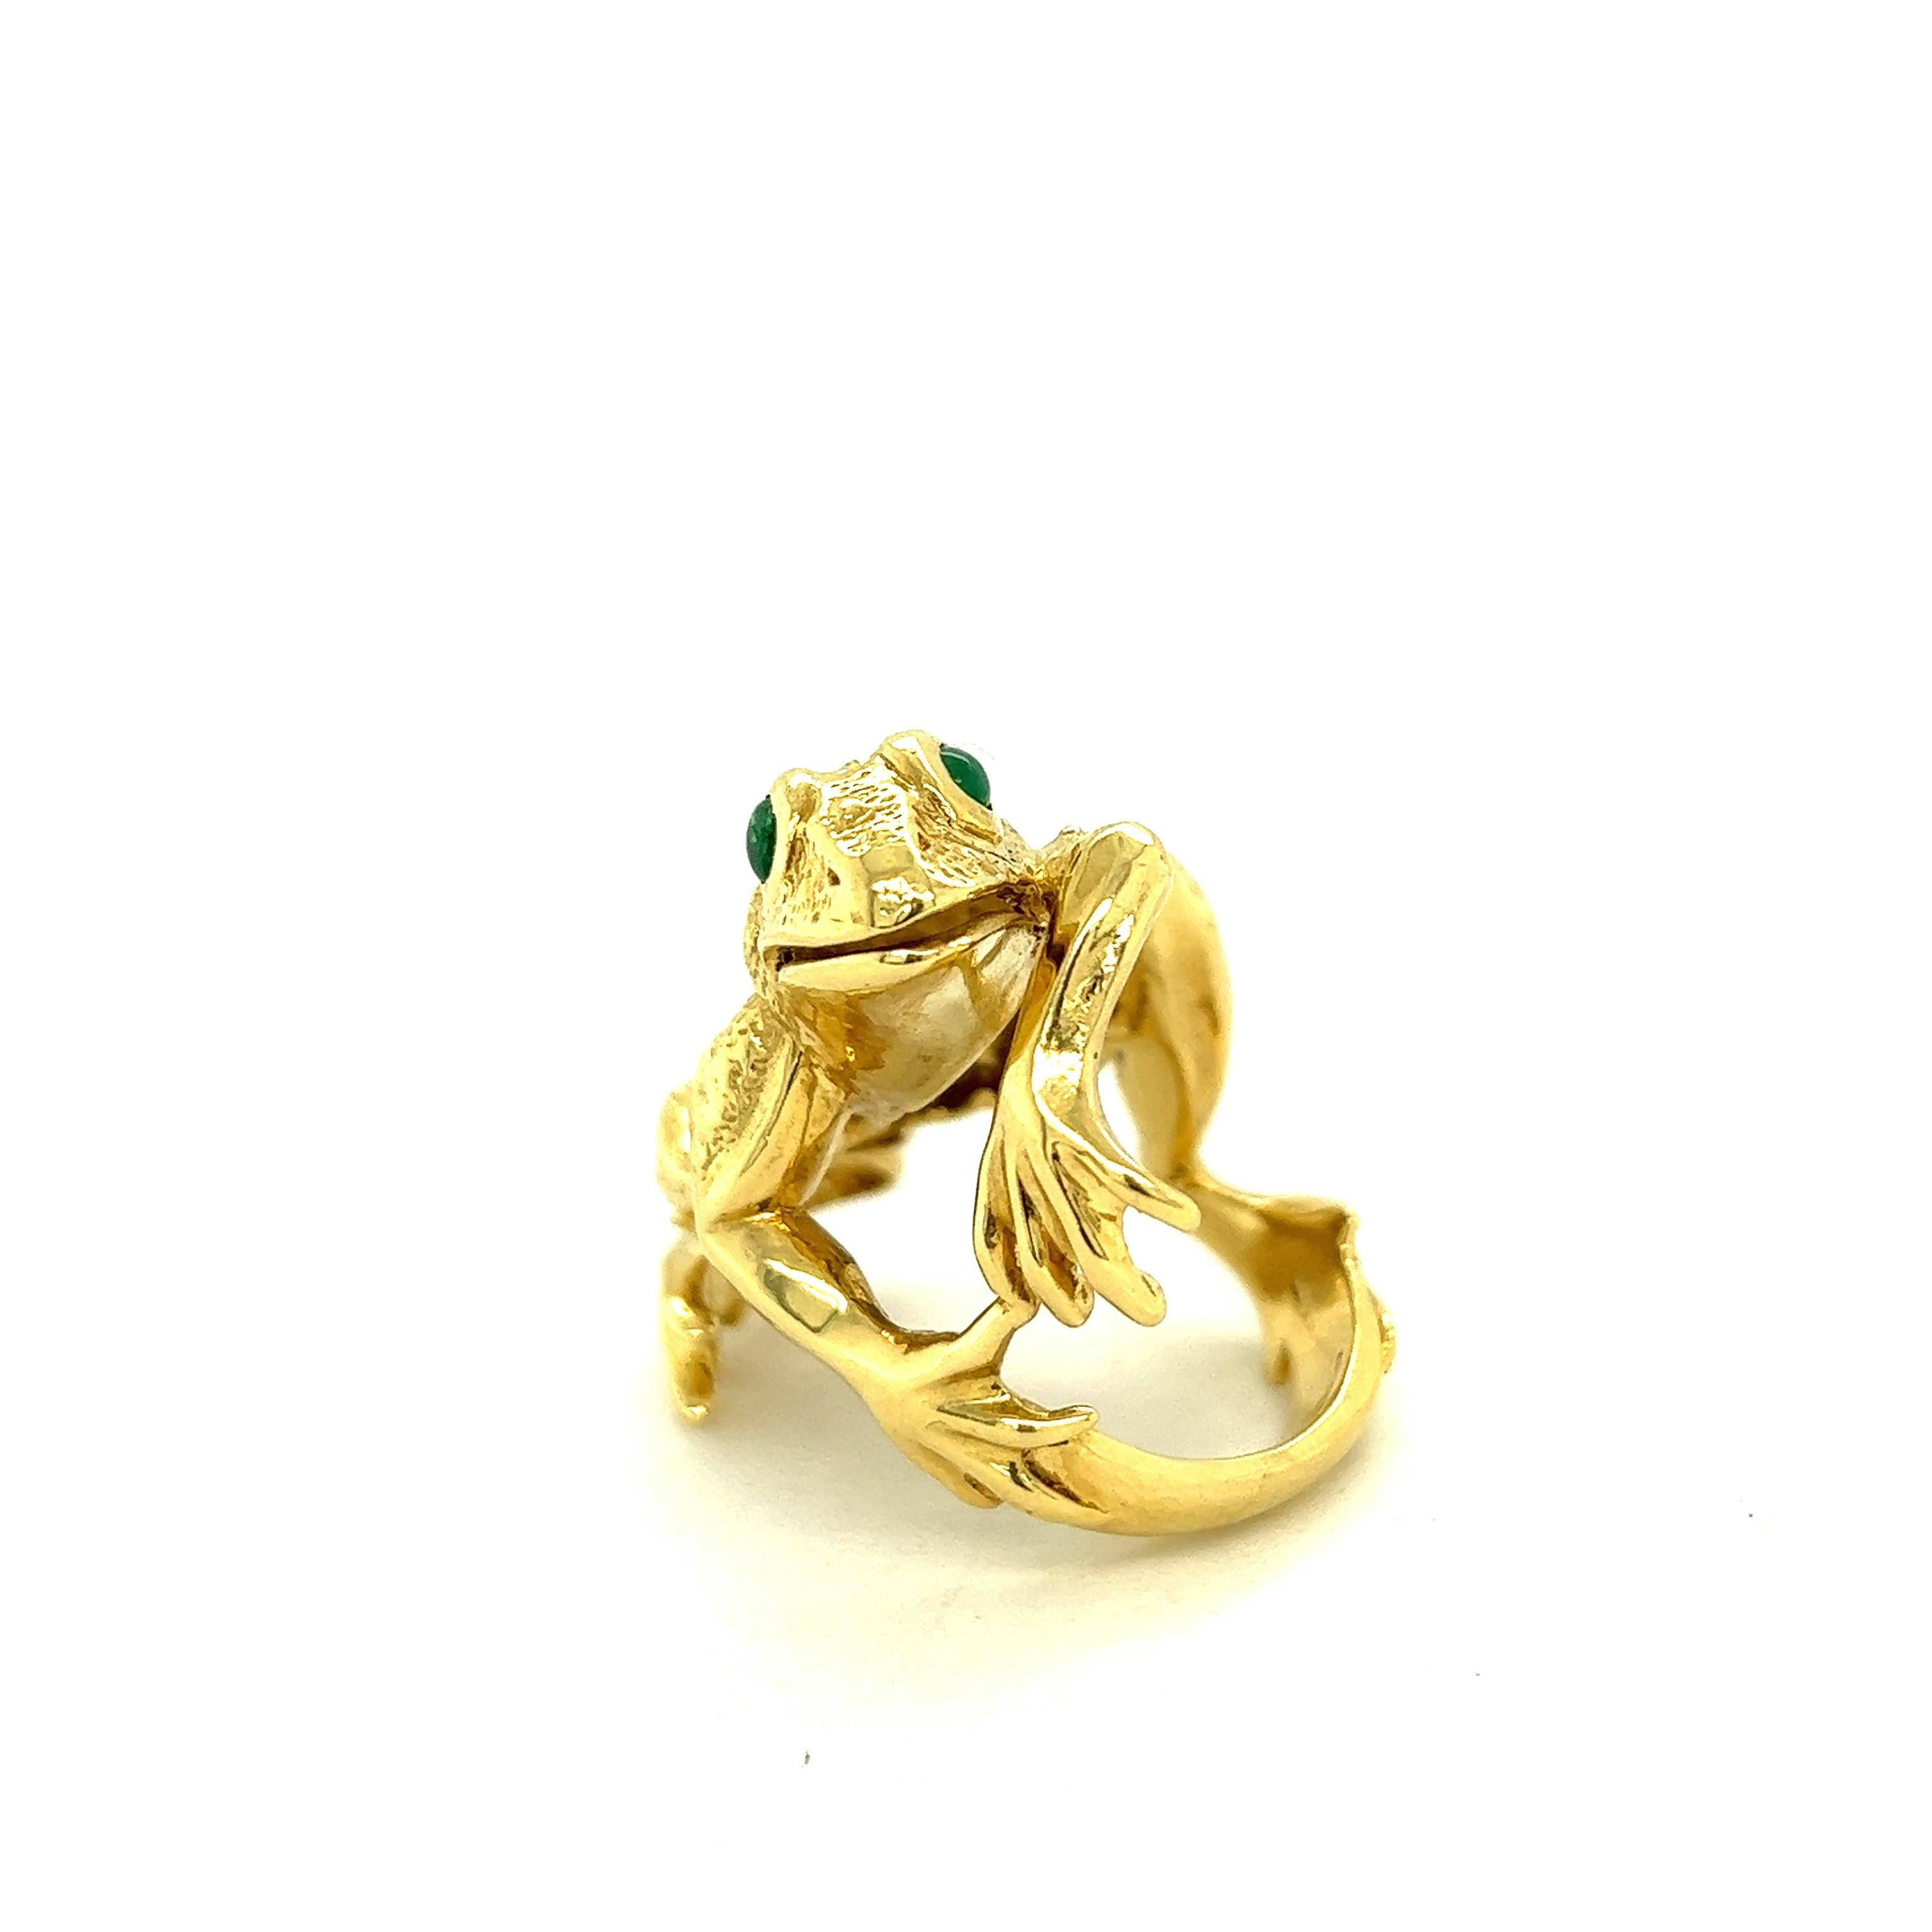 Contemporary Kurt Wayne Vintage 18k Yellow Gold Large Frog Ring